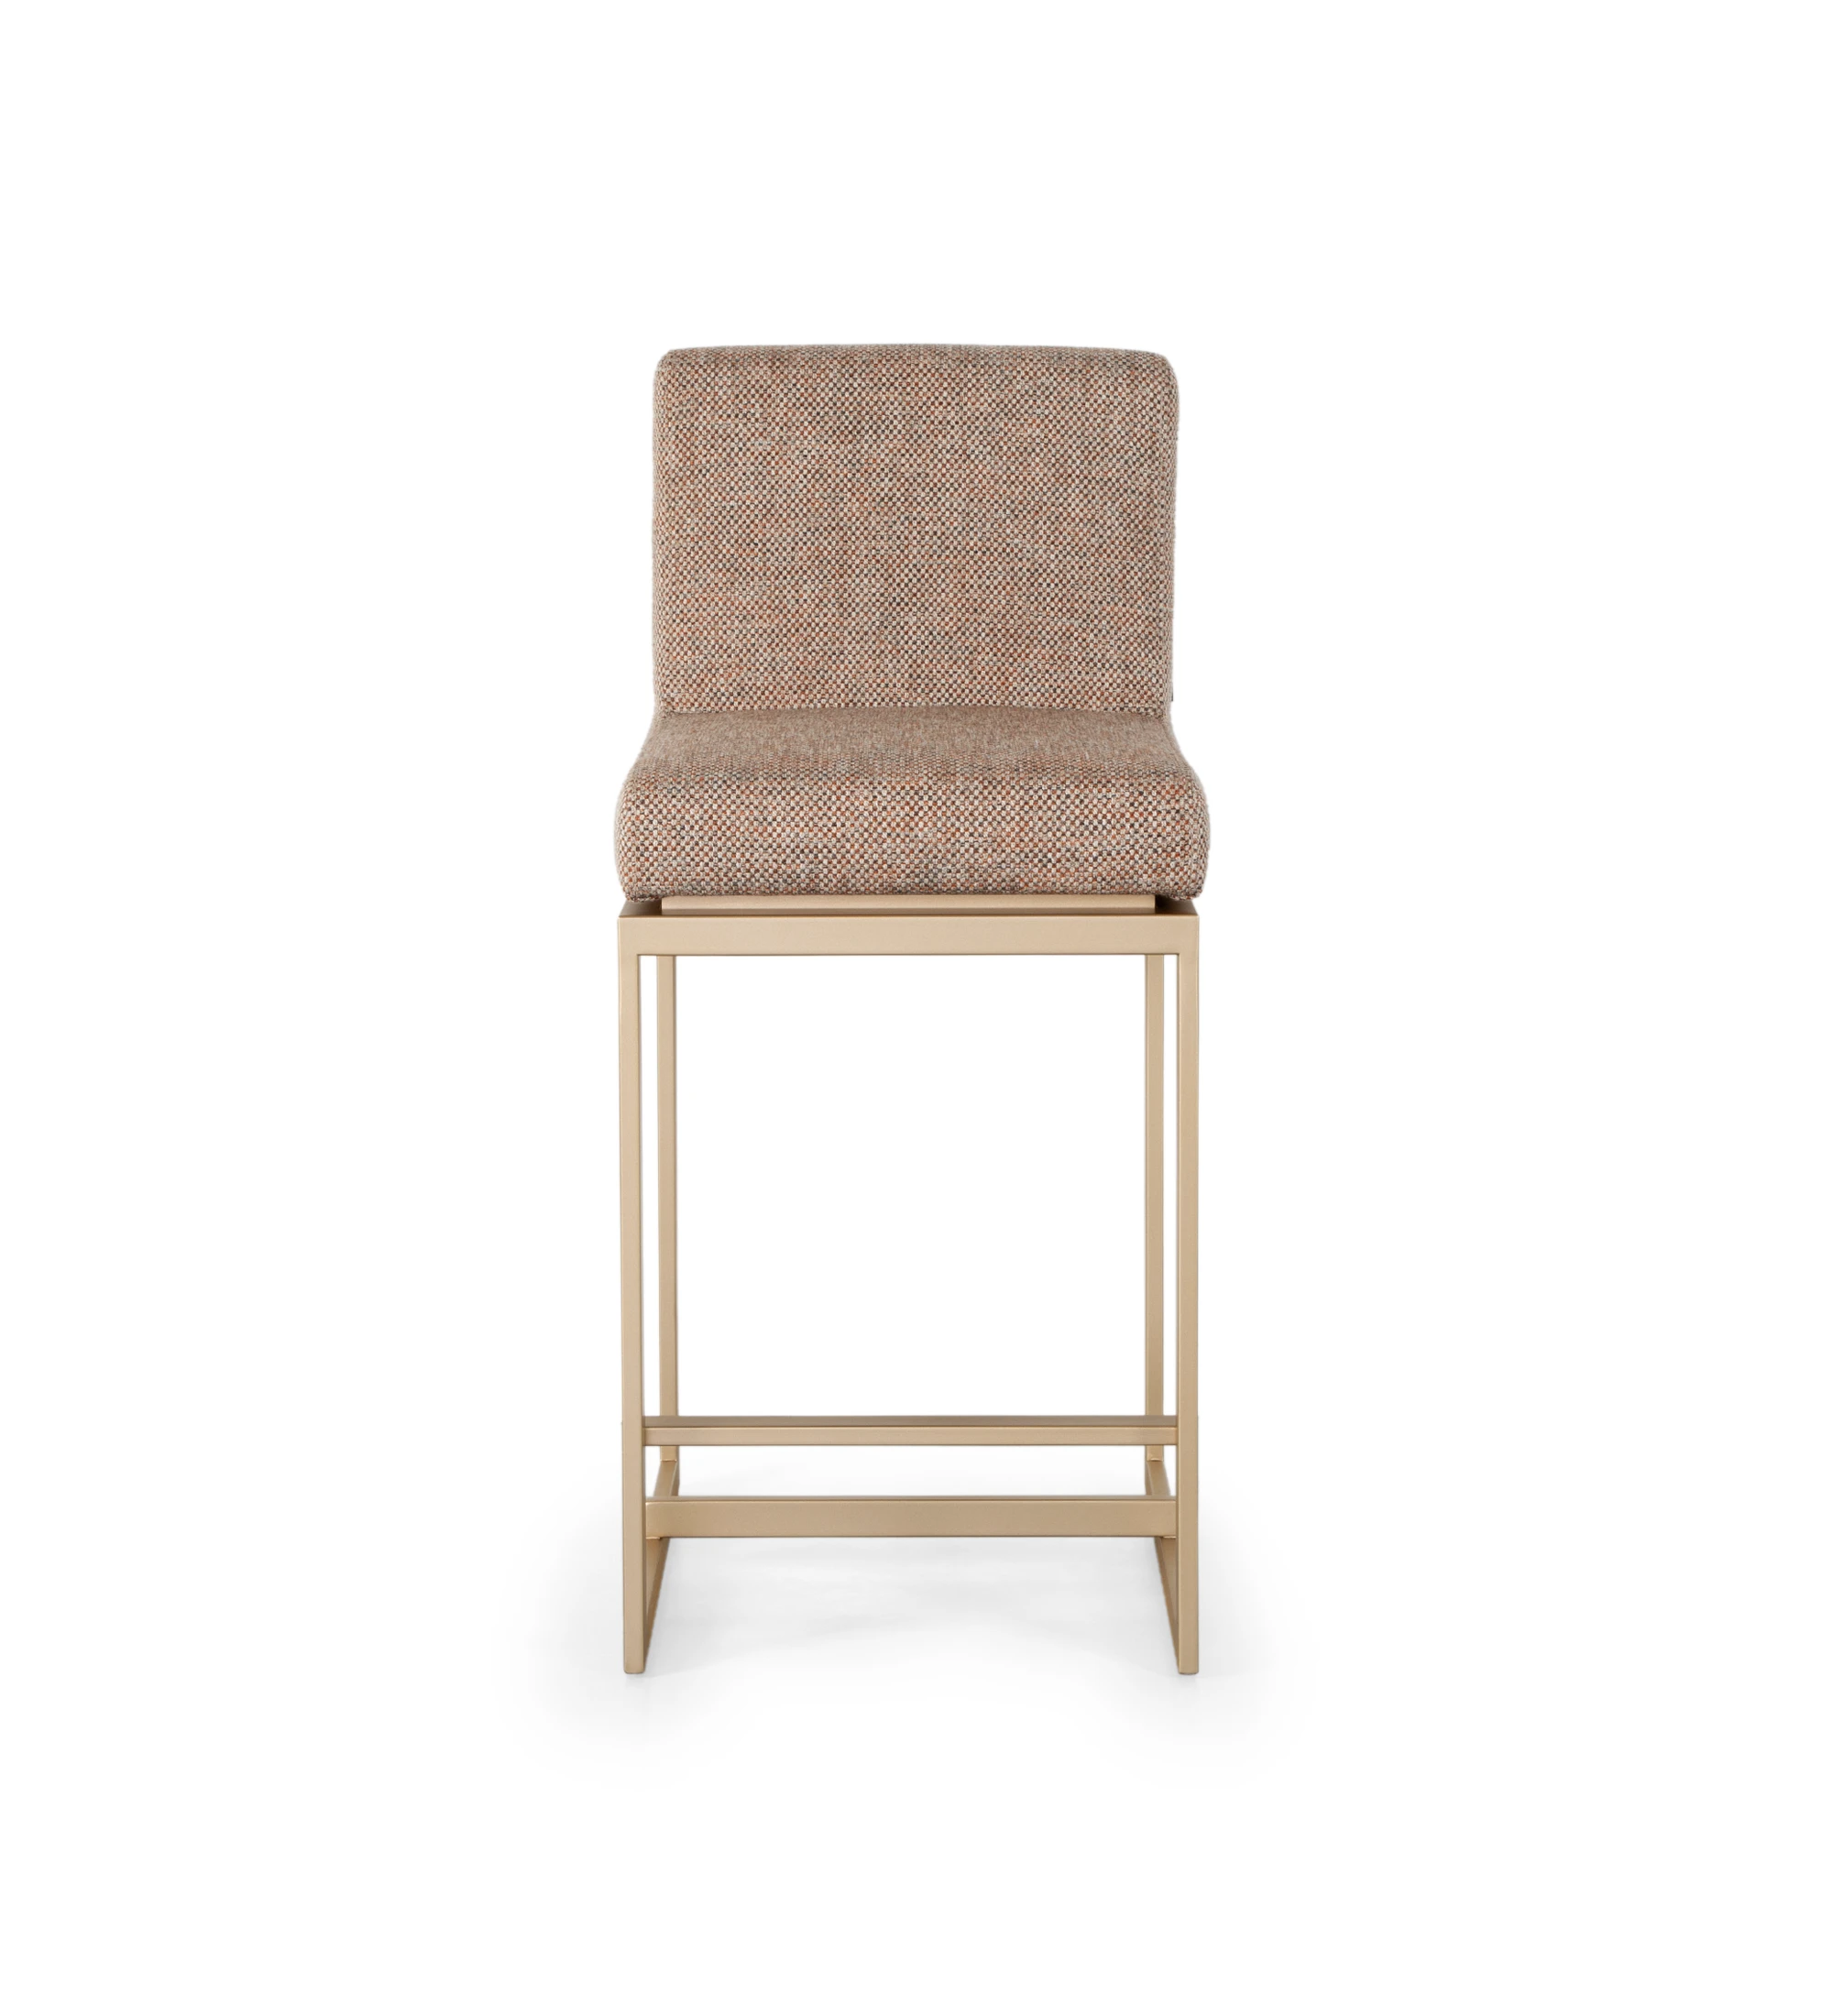 Taburete con asiento y respaldo tapizados en tela, con estructura de metal lacado en dorado